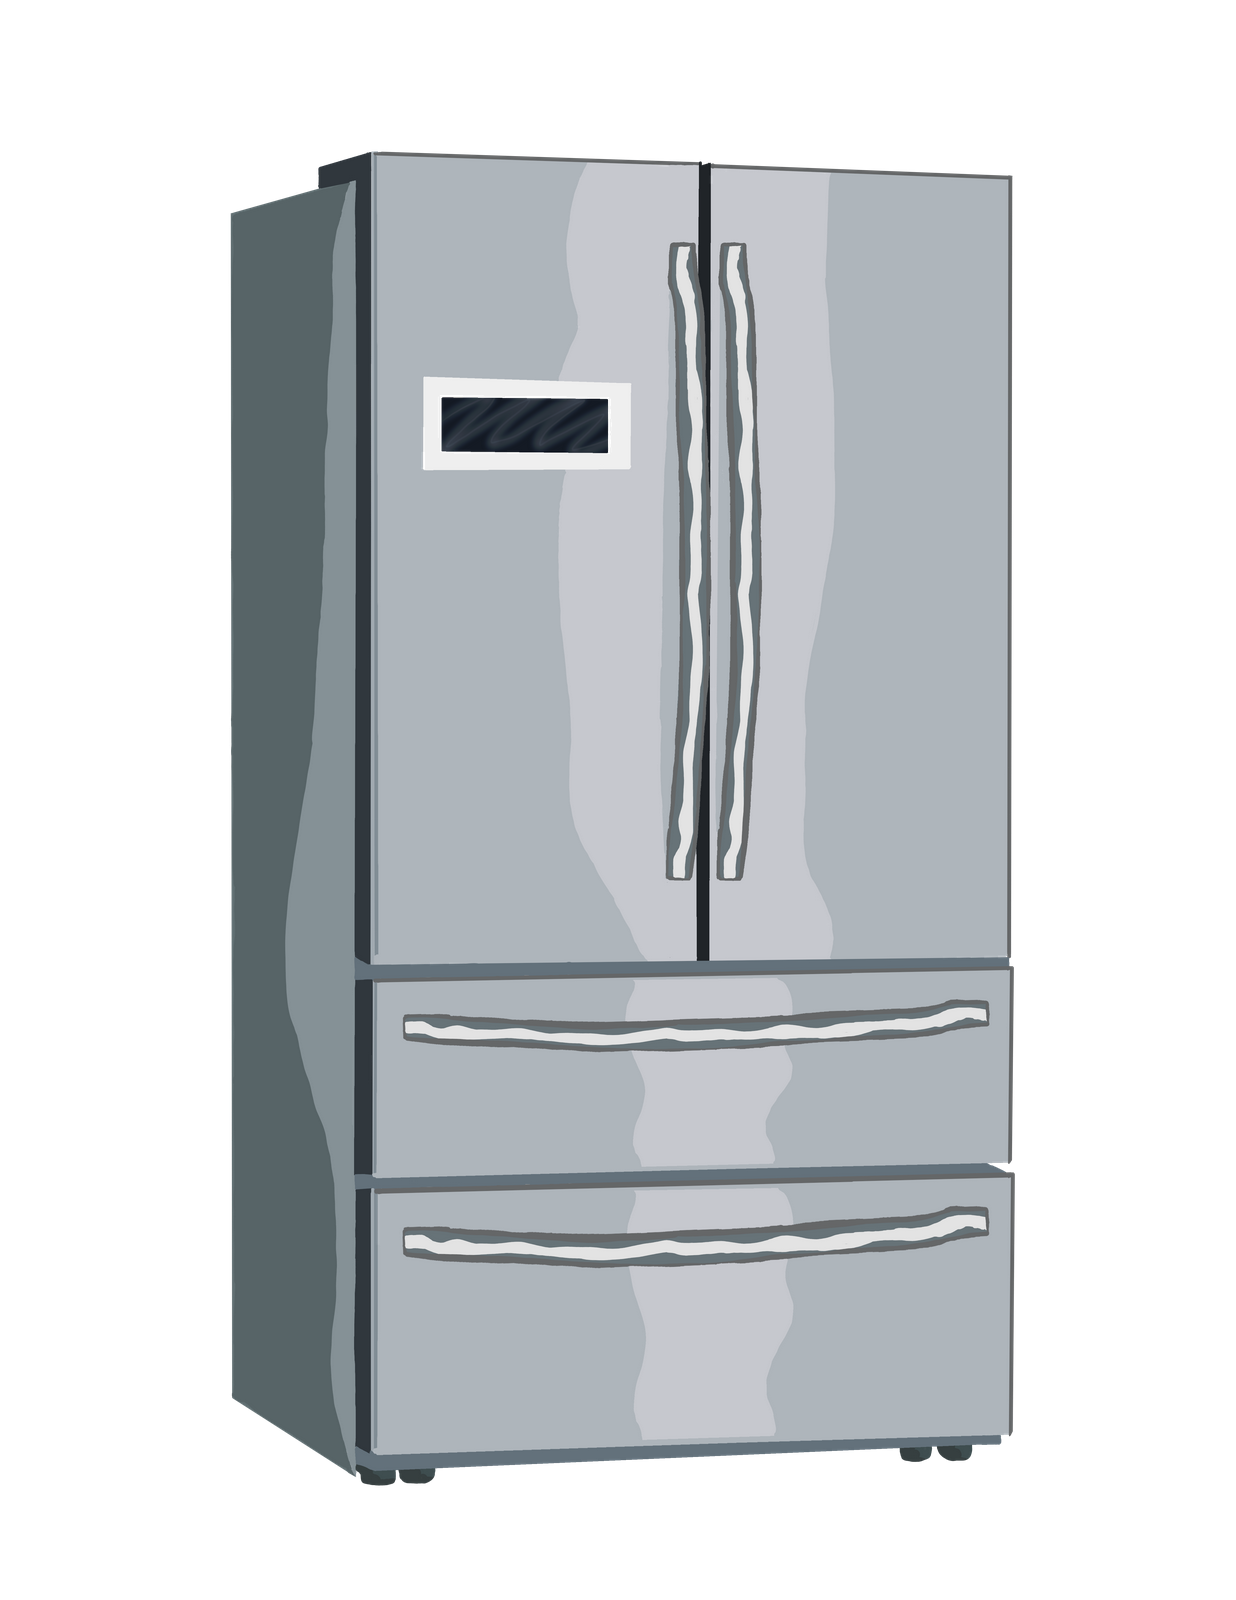 Refrigerator Repair In Montreal